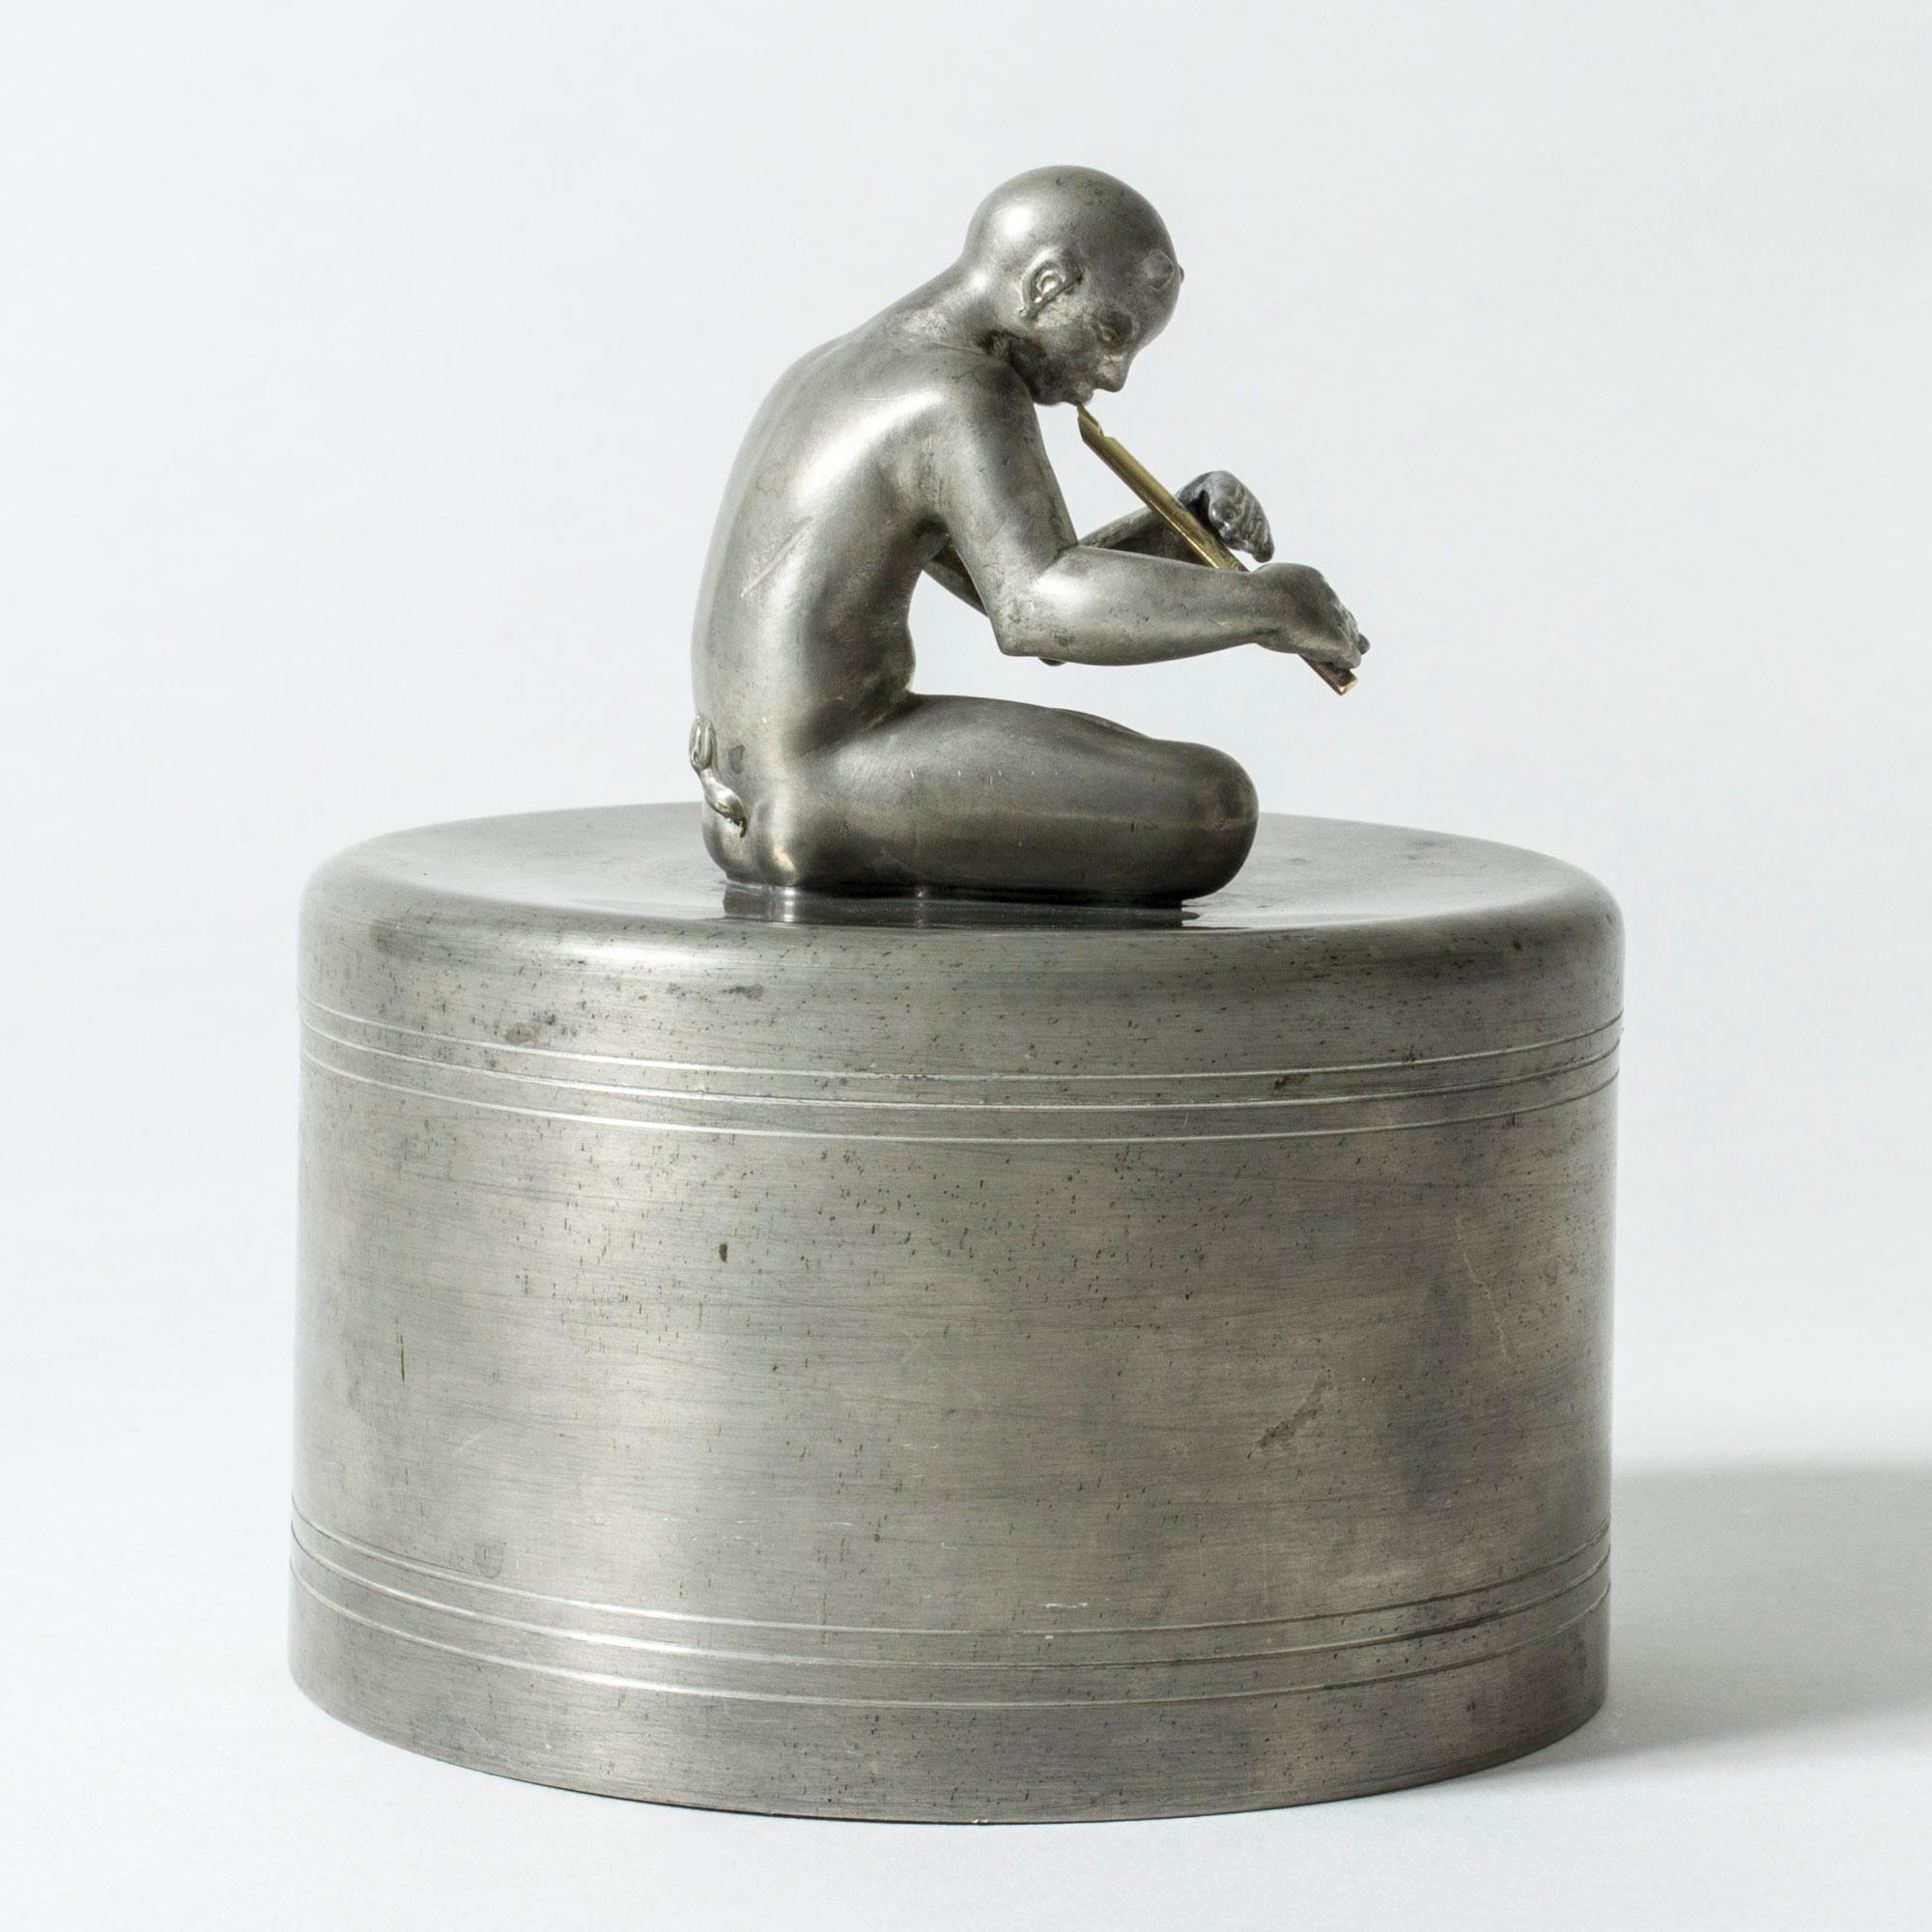 Étonnante jarre en étain de Nils Fougstedt, ornée d'une figurine de Pan jouant de la flûte, les jambes croisées. La petite flûte est fabriquée en laiton. Figurine magnifiquement sculptée avec une attention particulière aux détails et une pose